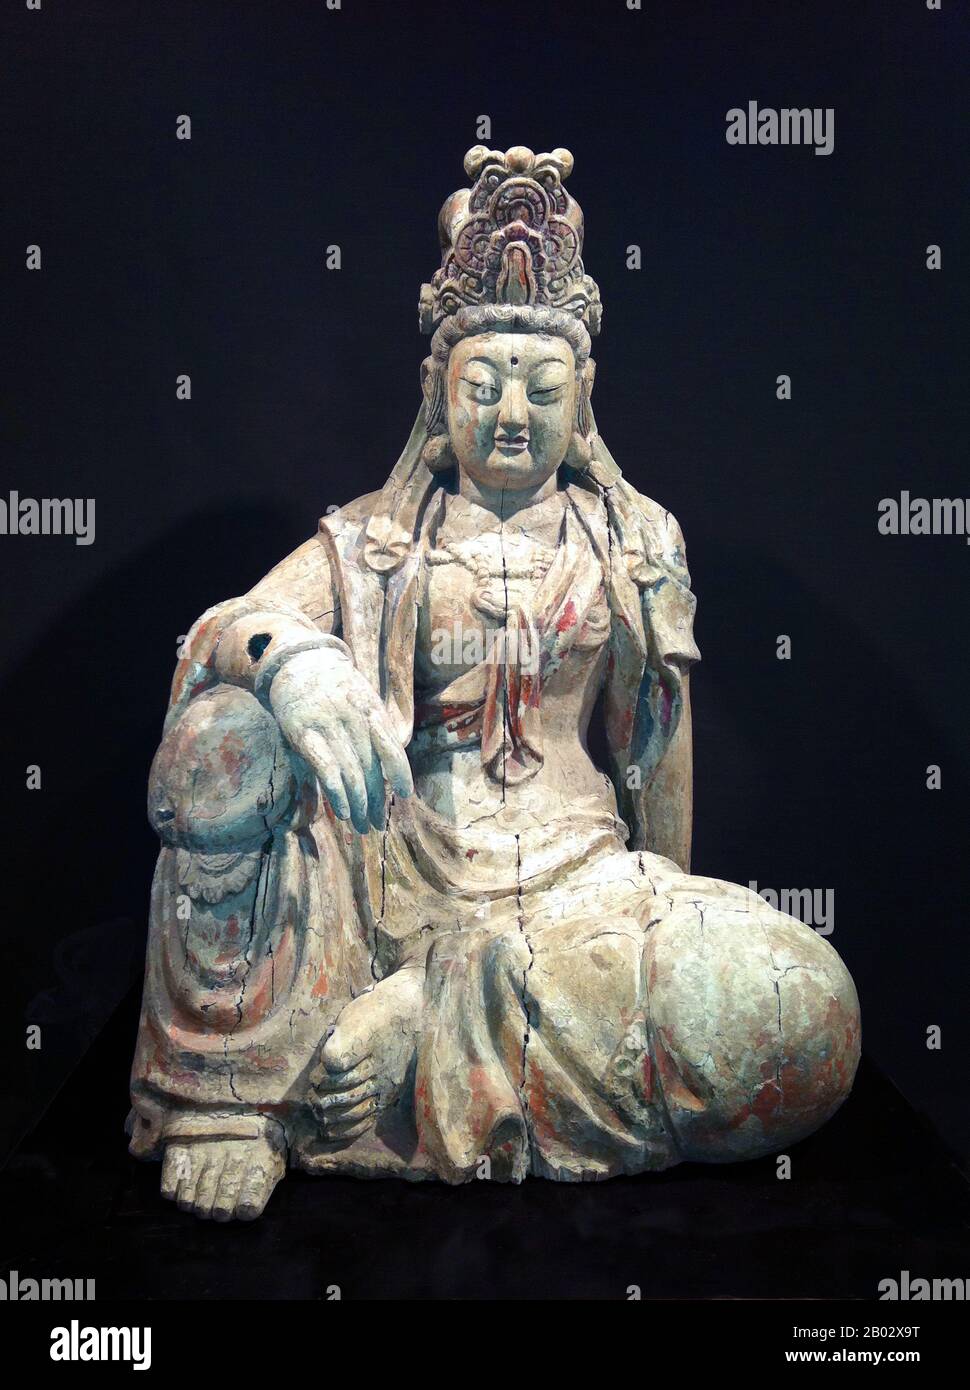 Cina: Immagine in legno di Guanyin, la Dea della Misericordia. Dinastia Ming (1368-1644). Guantshiyin o Avalokitesvara è il bodhisattva associato con la compassione come venerato dai buddisti dell'Asia orientale, solitamente come una femmina. Il nome Guanyin è l'abbreviazione di Guantshiyin, che significa "osservare i suoni (o piangere) del mondo". E' generalmente accettato (nella comunità cinese) che Guanyin abbia avuto origine come Sanscrito Avalokitesvara, che è la sua forma maschile. Comunemente conosciuto in inglese come la dea della Misericordia, Guanyin è anche venerato nel Daoismo come un Immortal.in Giappone, Guanyin è chiamato Kannon. Foto Stock